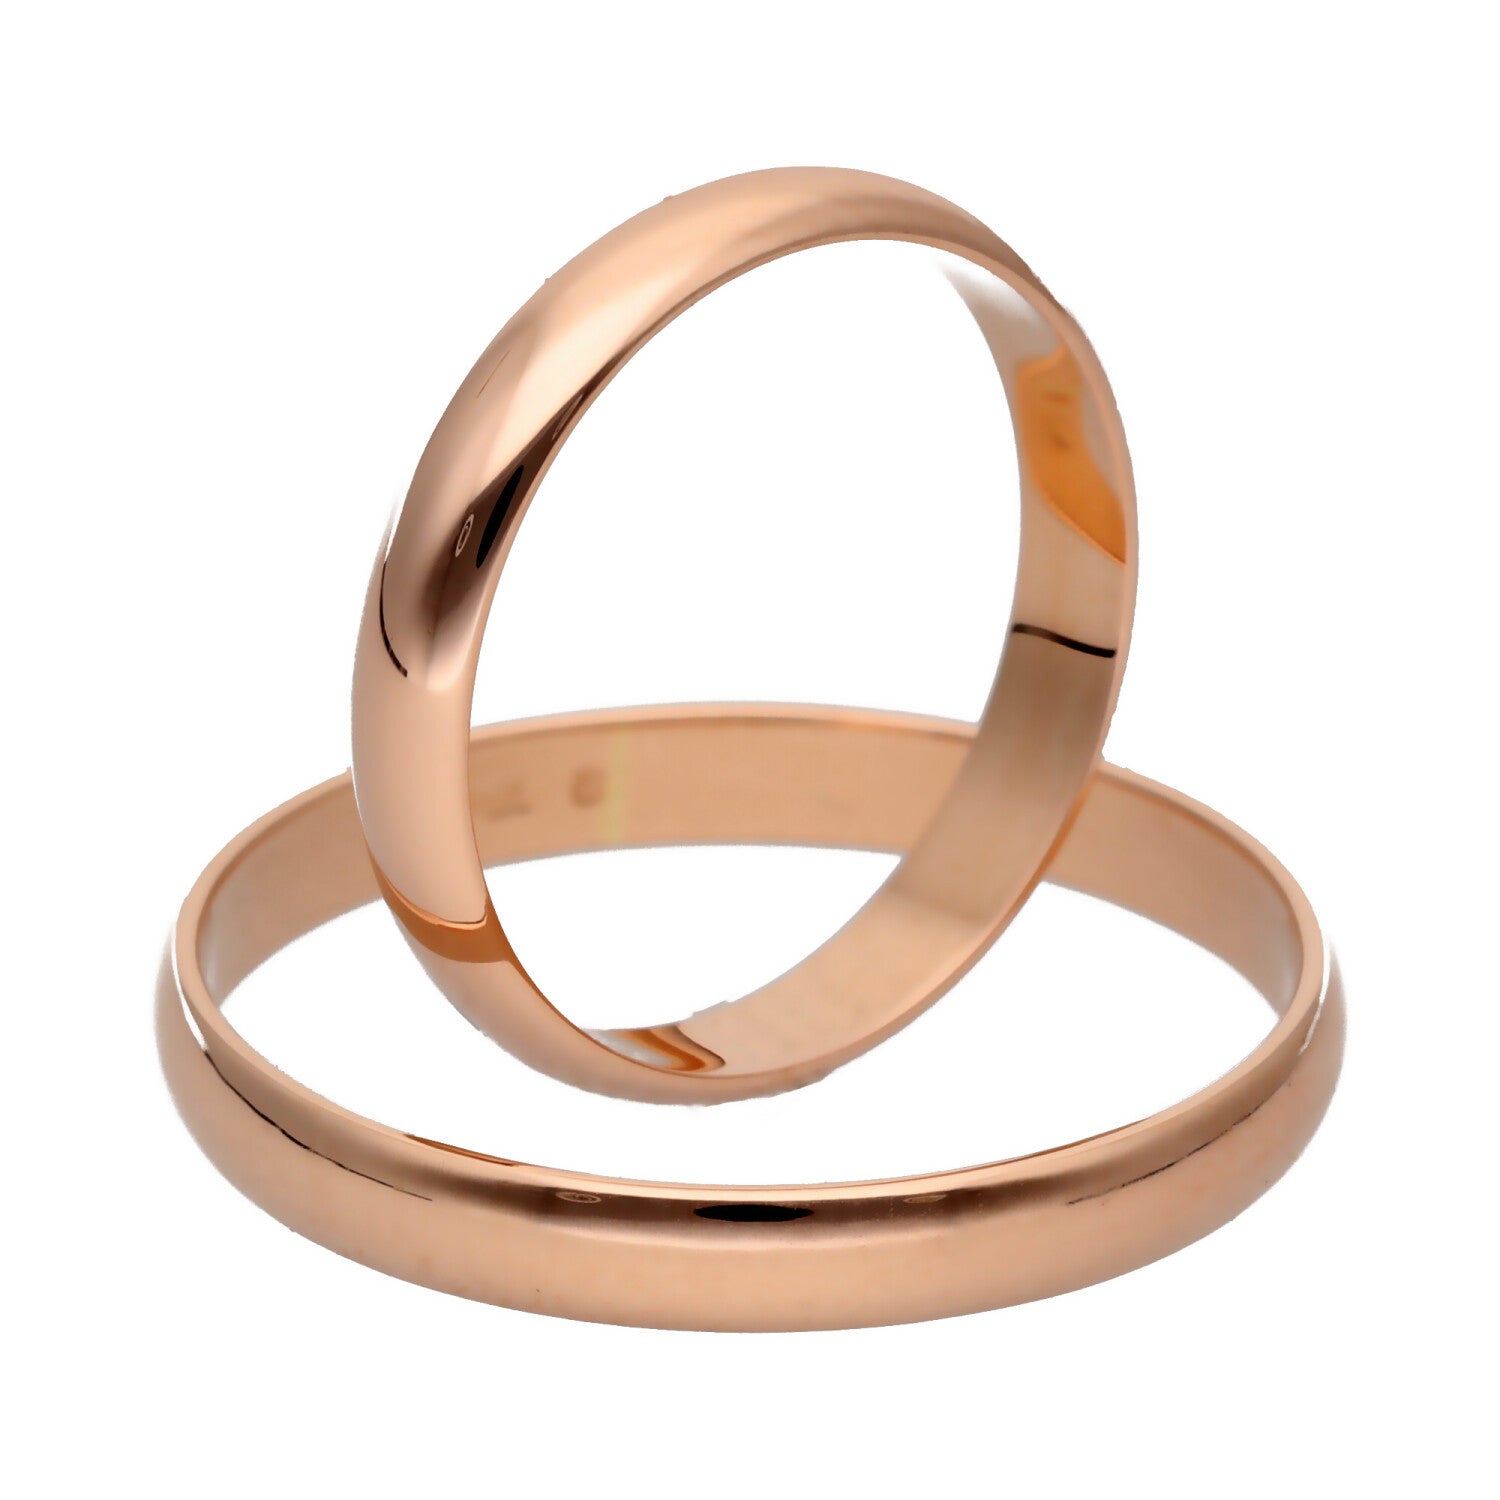 Klasikiniai vestuviniai žiedai 4mm pločio vestuviniaiziedai.lt